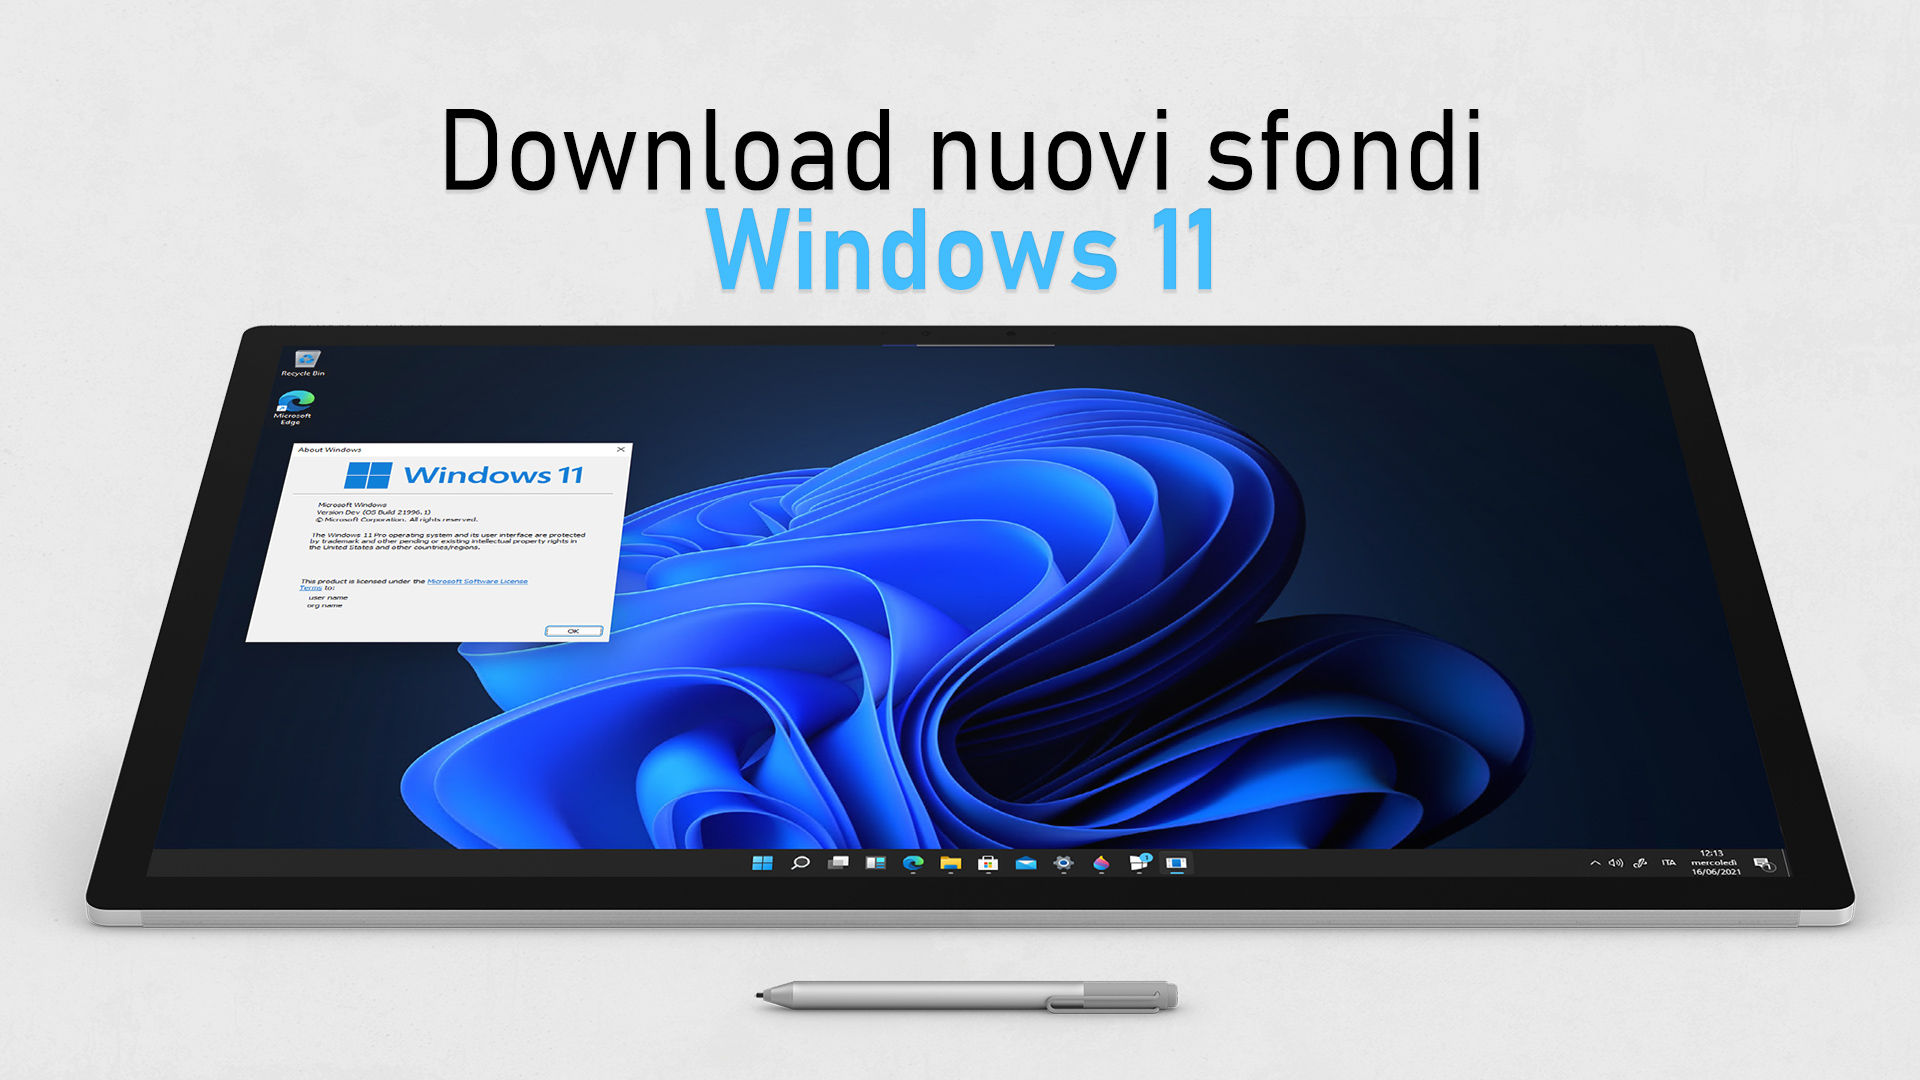 Download nuovi sfondi ufficiali di Windows 11